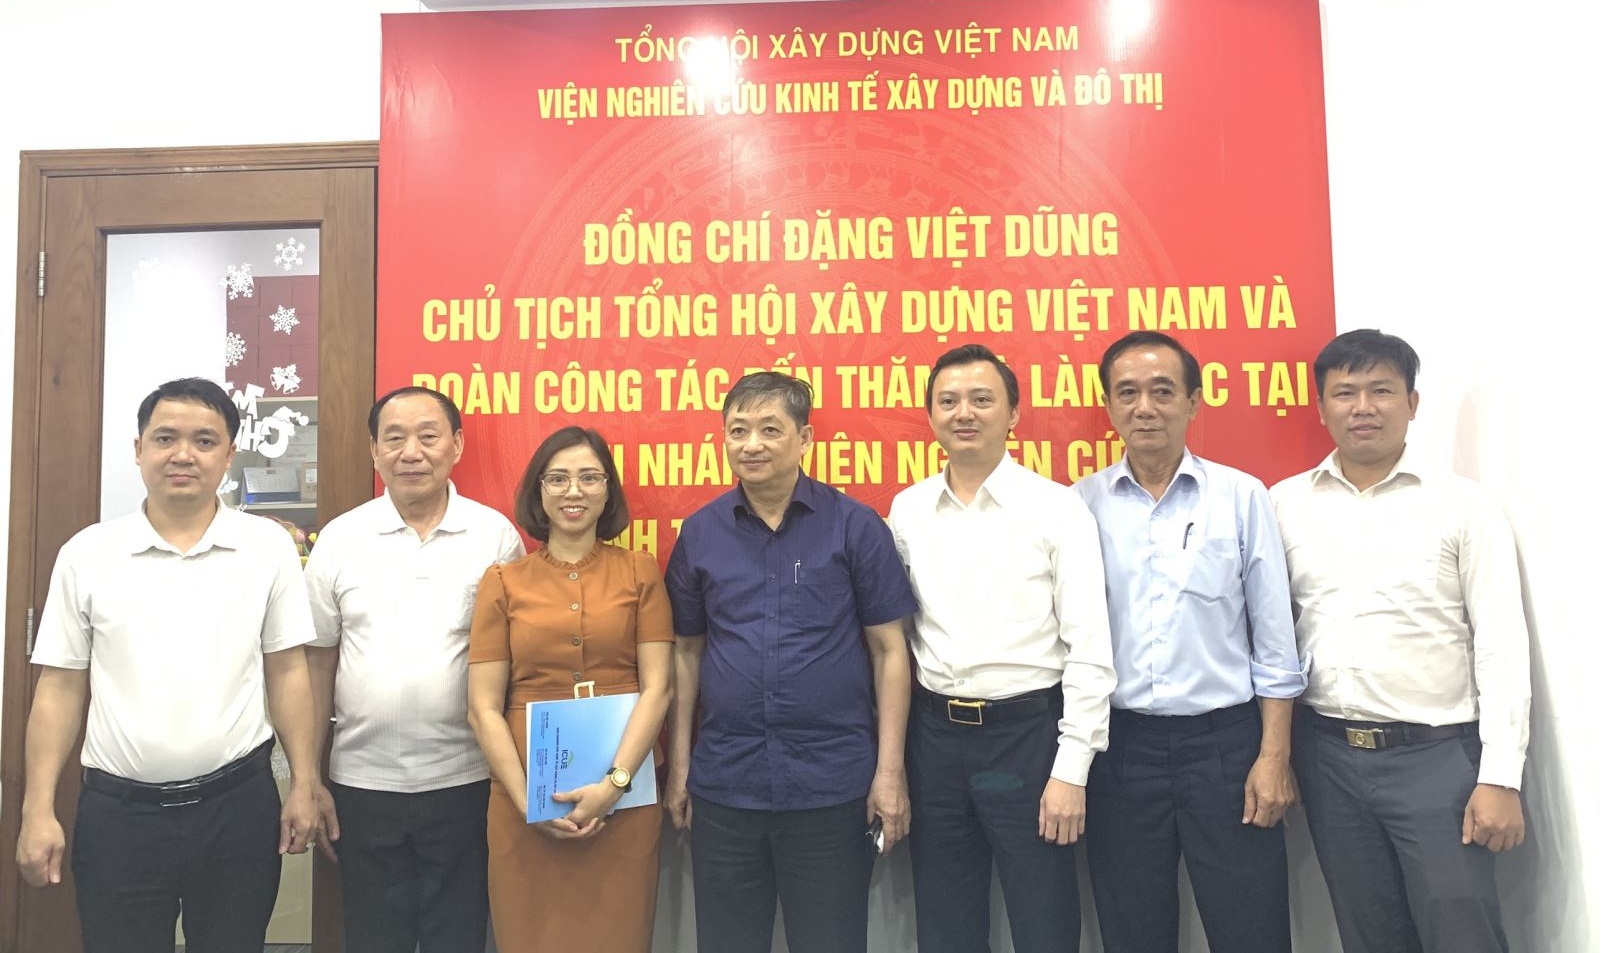 Lãnh đạo Tổng Hội Xây dựng Việt Nam thăm và làm việc với nhiều đơn vị ở TP HCM